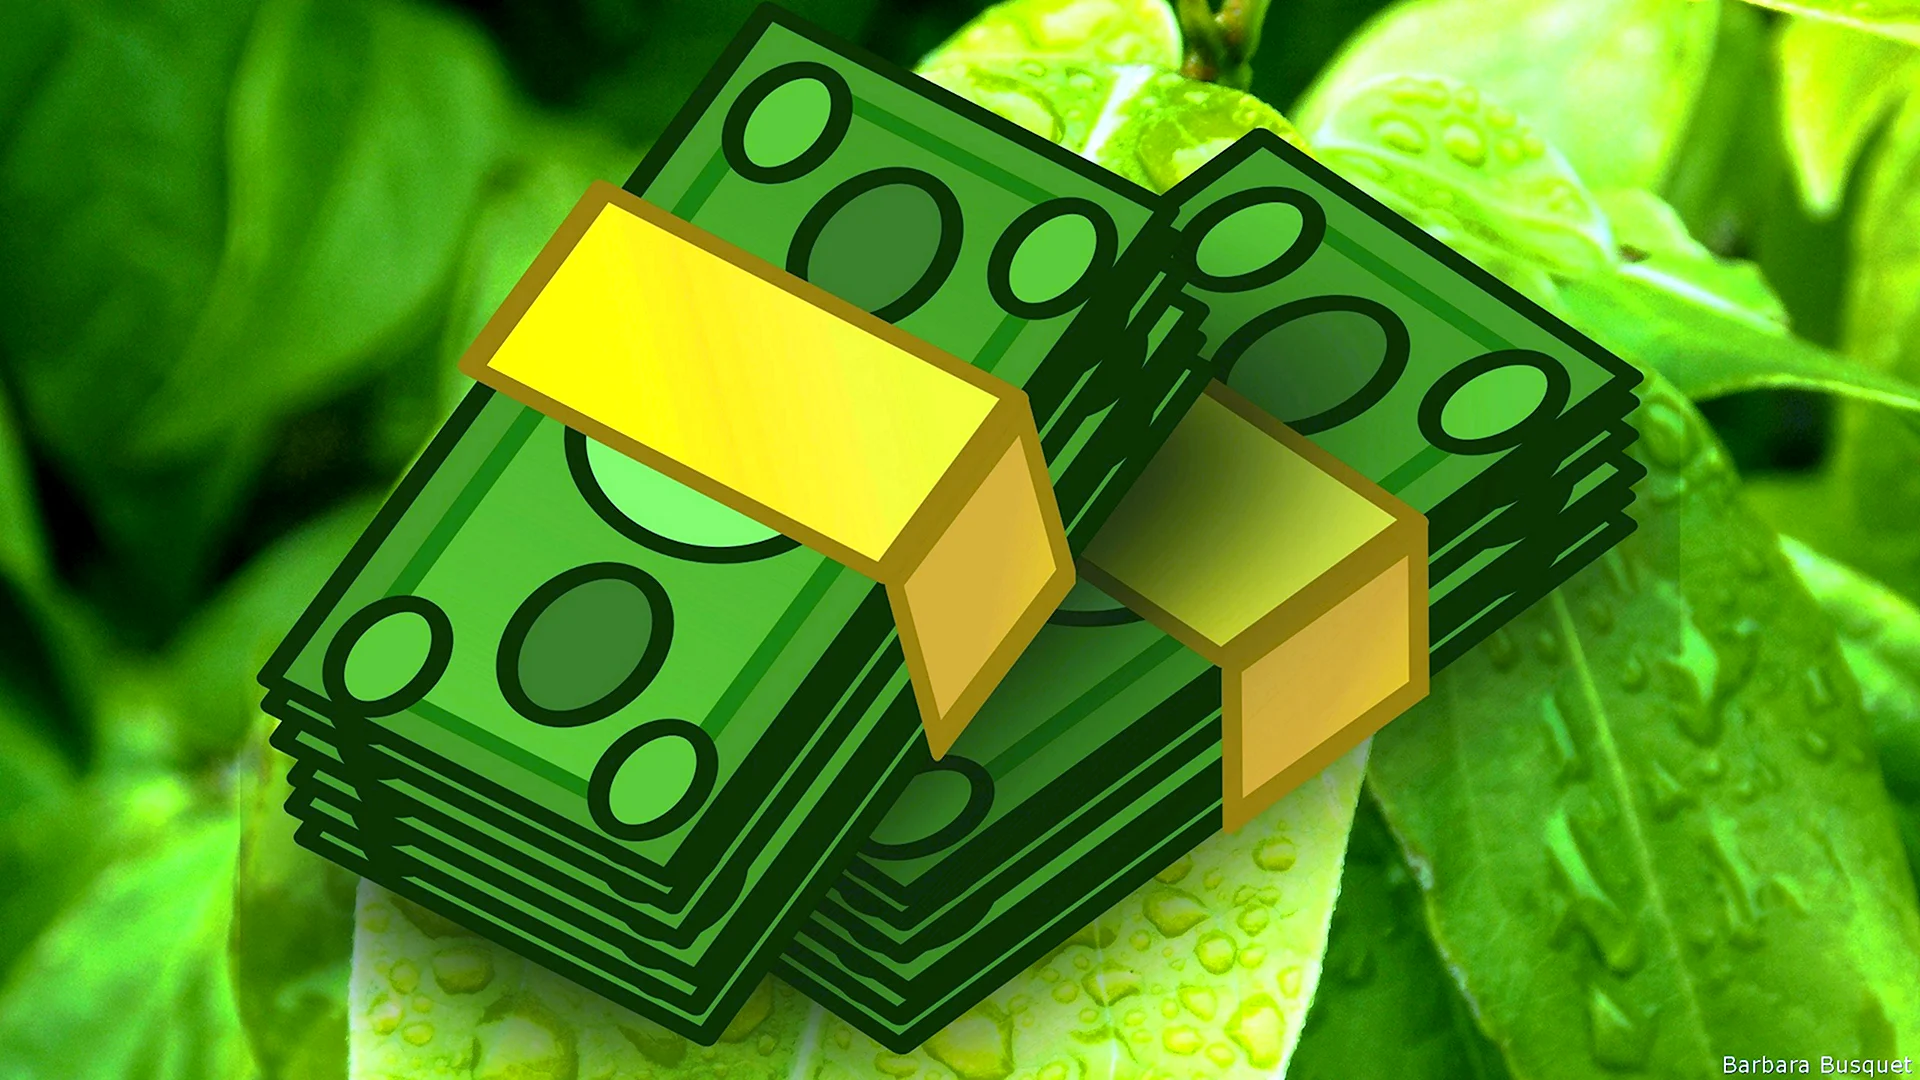 Зеленые деньги